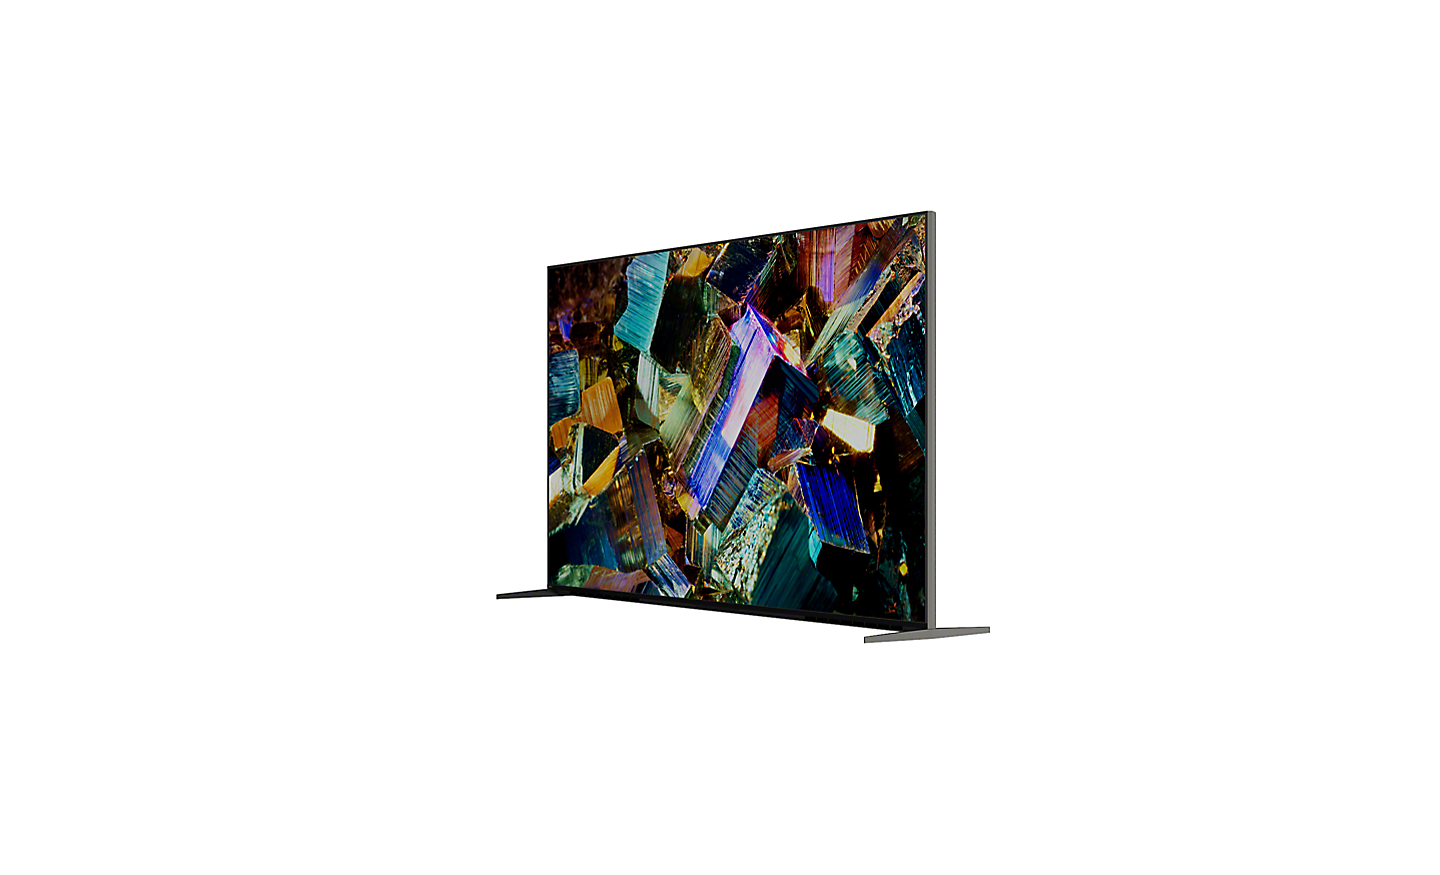 Affichage coulissant à 360° montrant le téléviseur série Z9K et une capture d'écran de cristaux multicolores